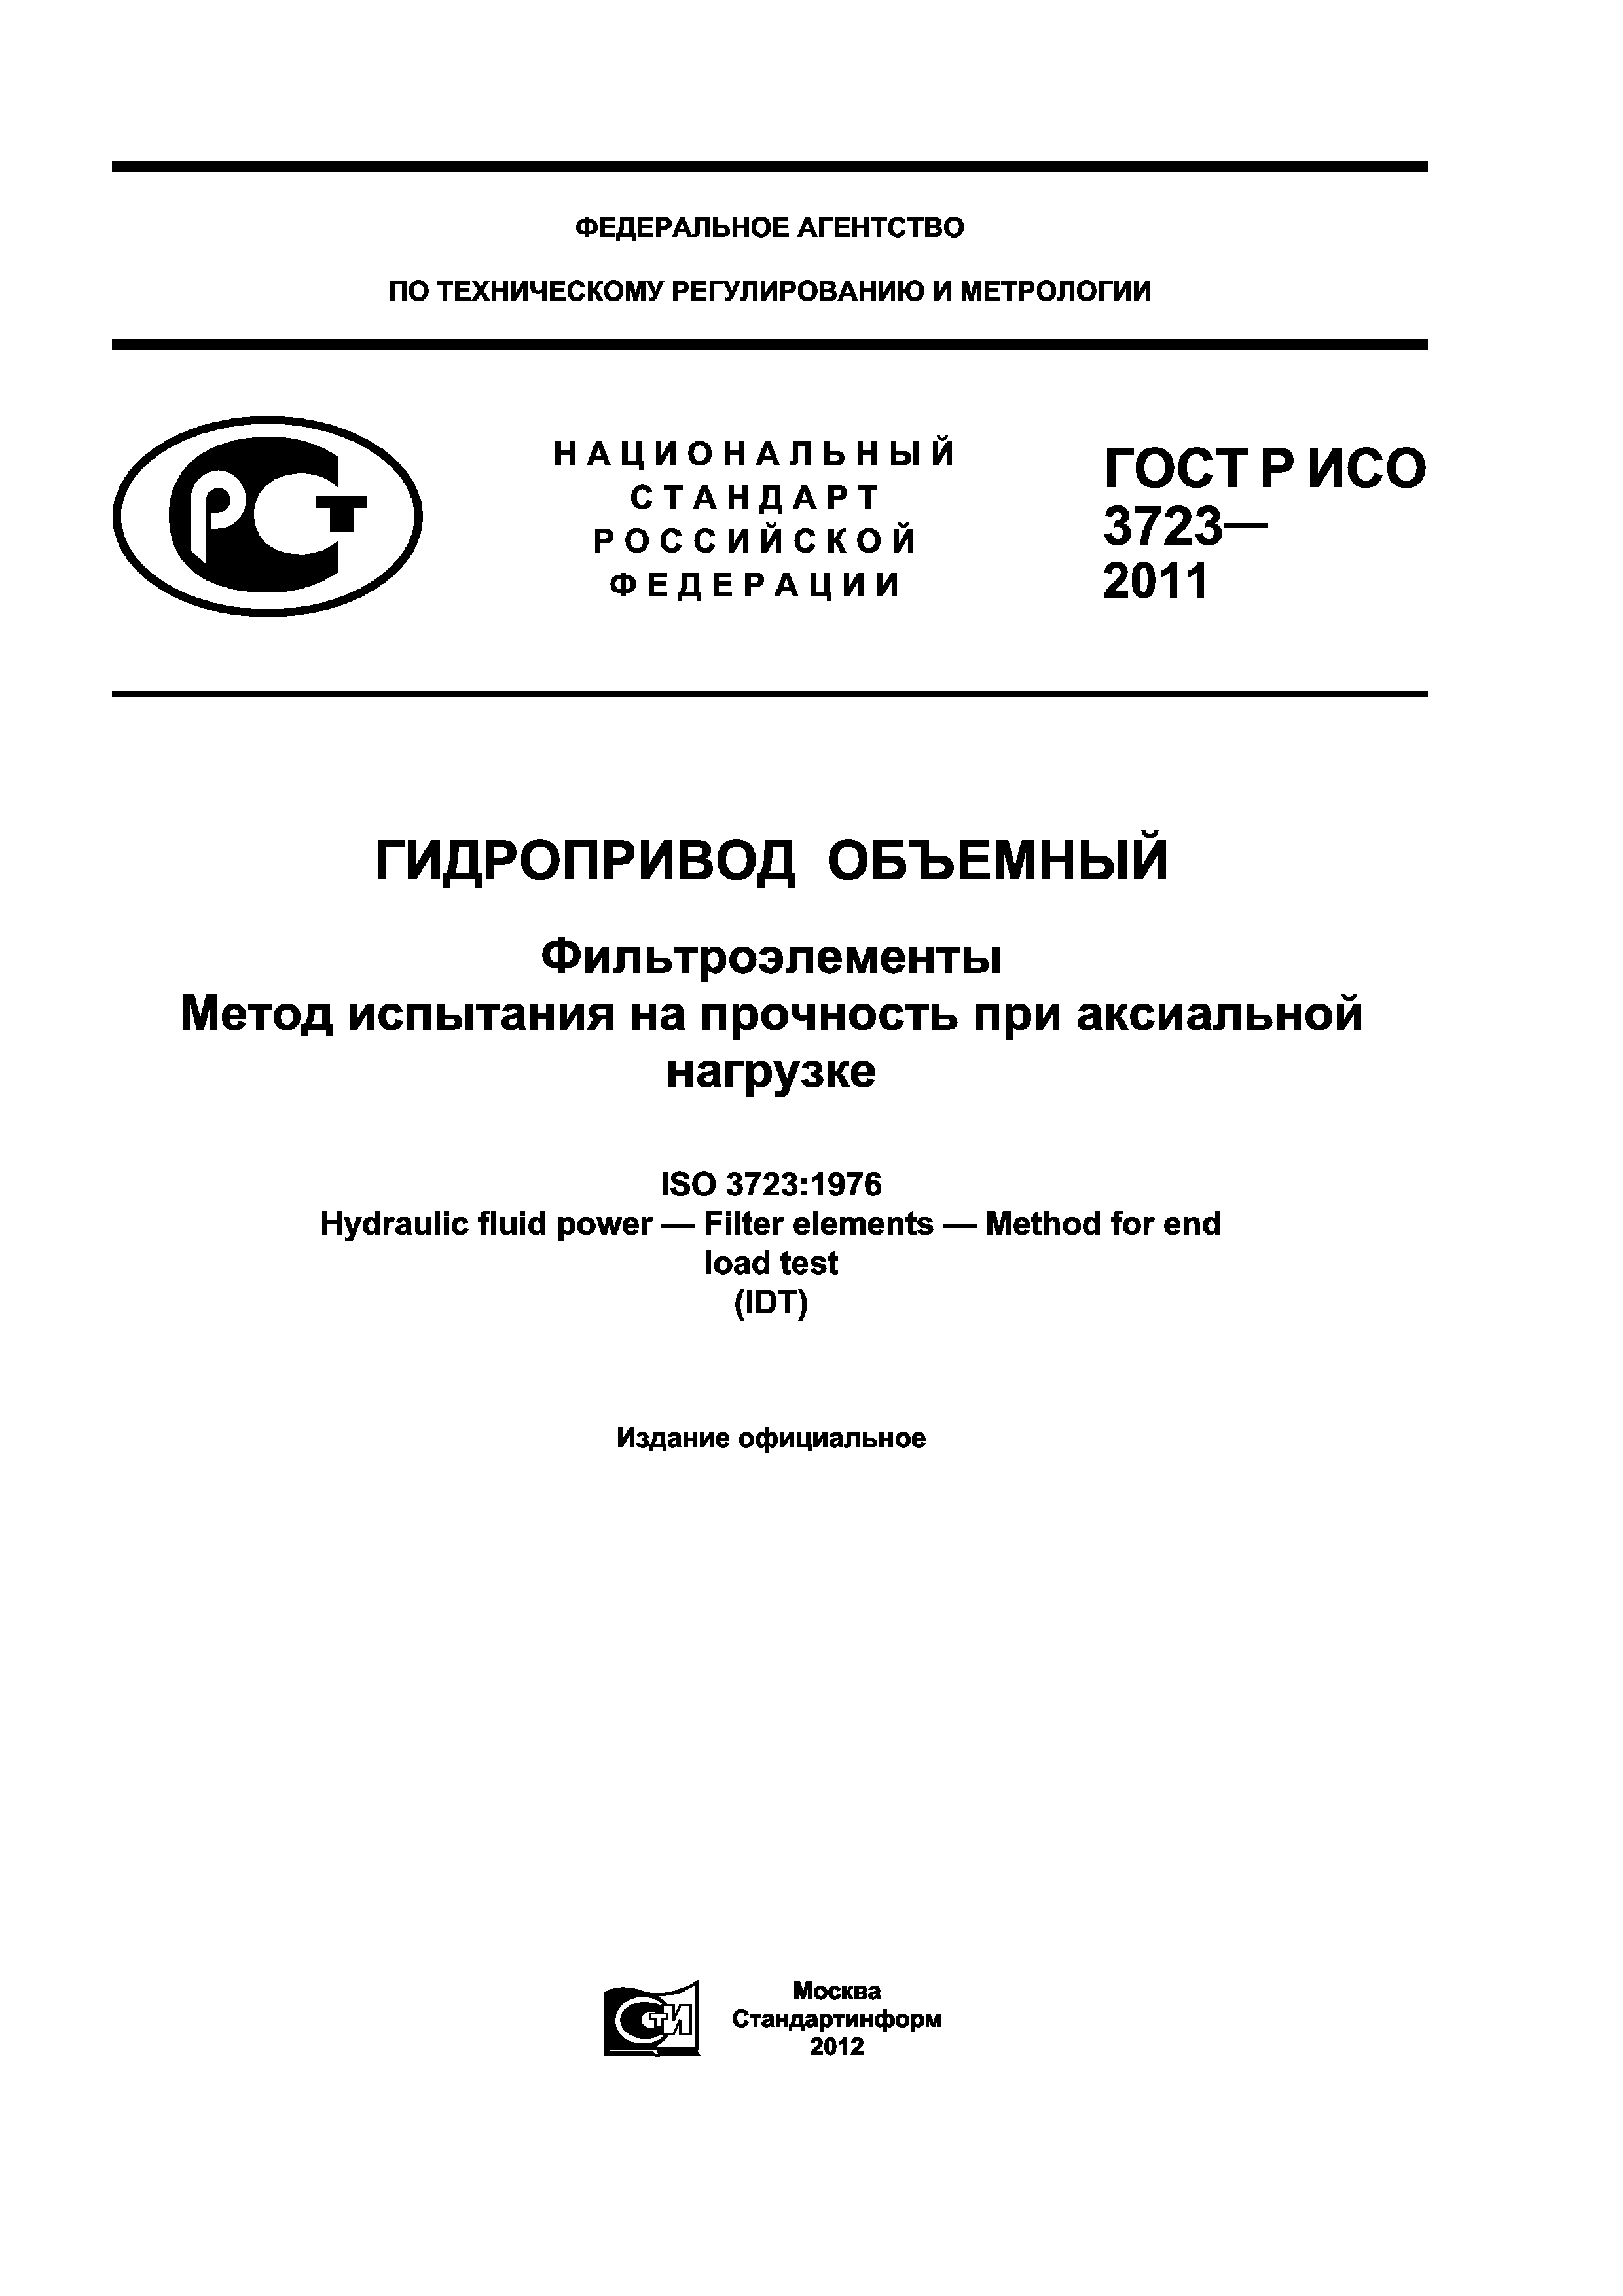 ГОСТ Р ИСО 3723-2011